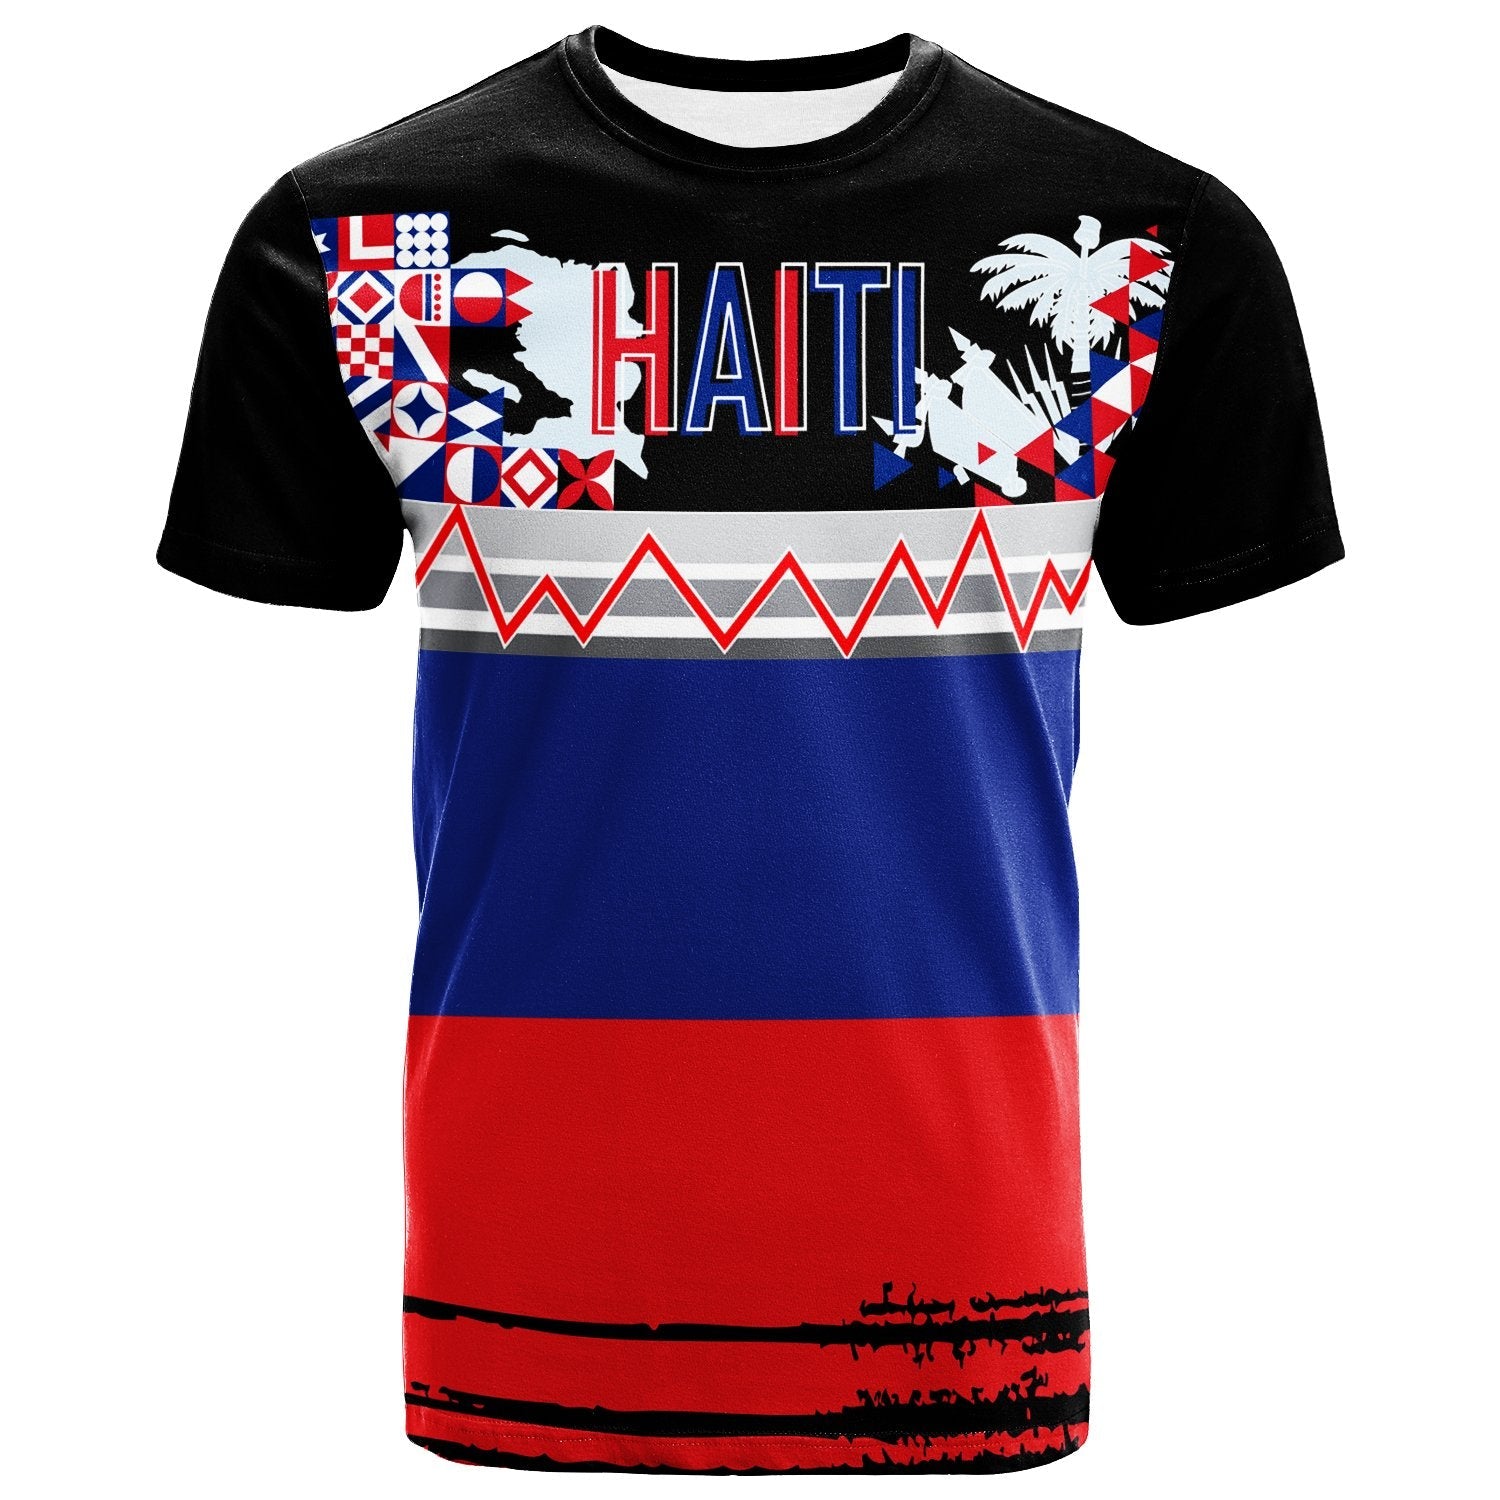 haitian-t-shirt-youthful-style